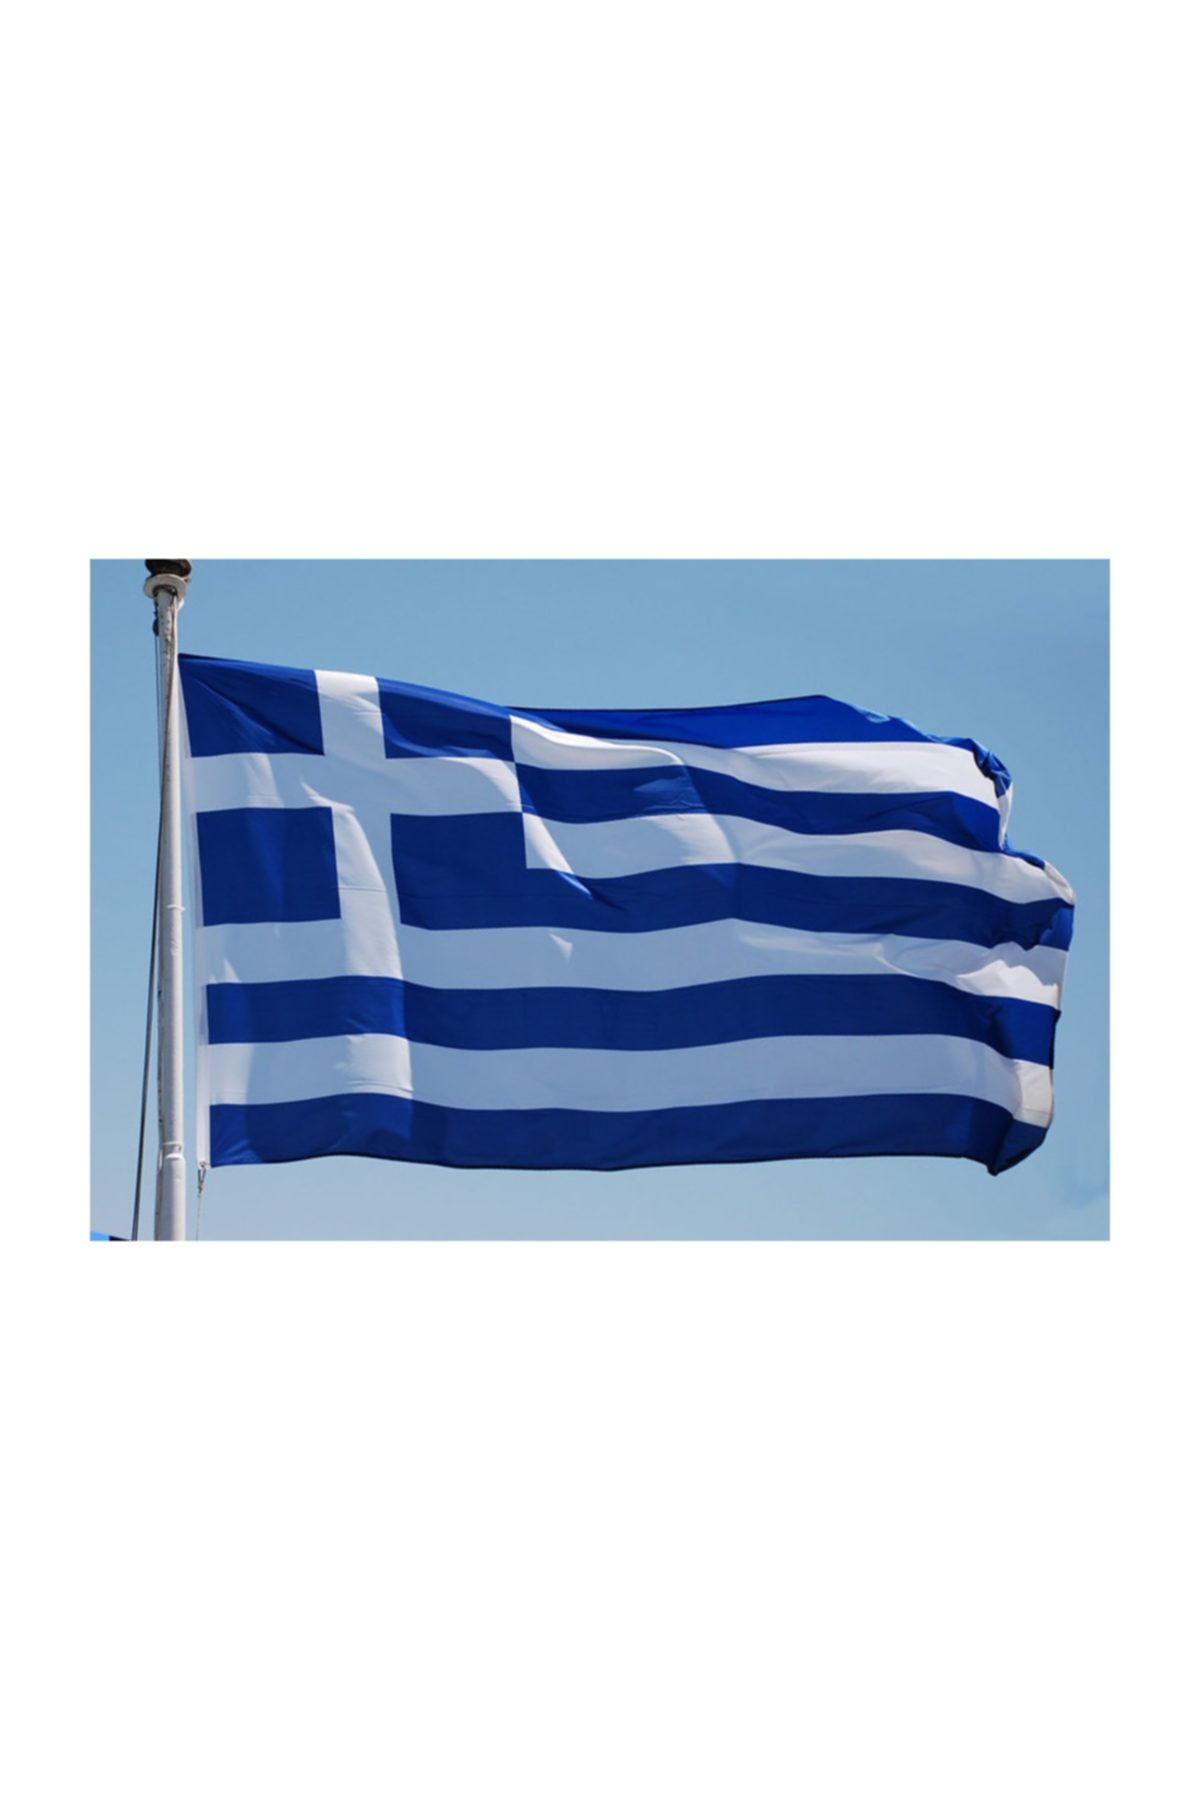 bayrakal  Yunanistan Bayrağı 50x75cm